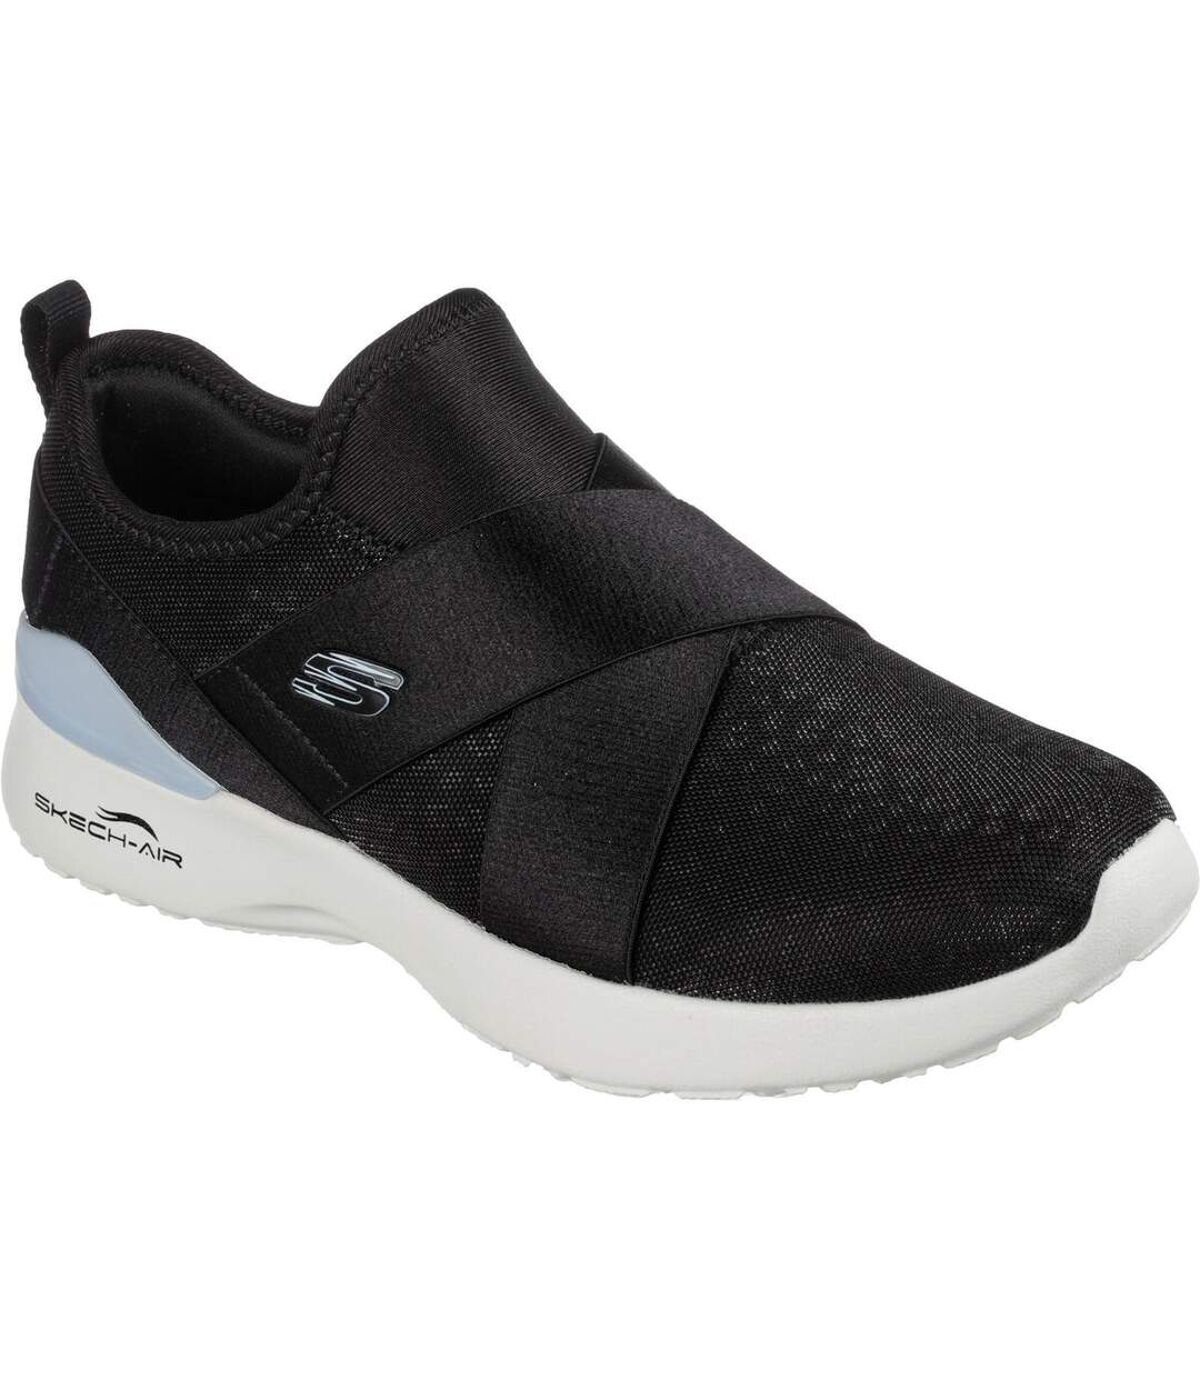 Skechers Womens/Ladies Skech-Air Dynamight Sneakers (Black/Light Blue) - UTFS8653